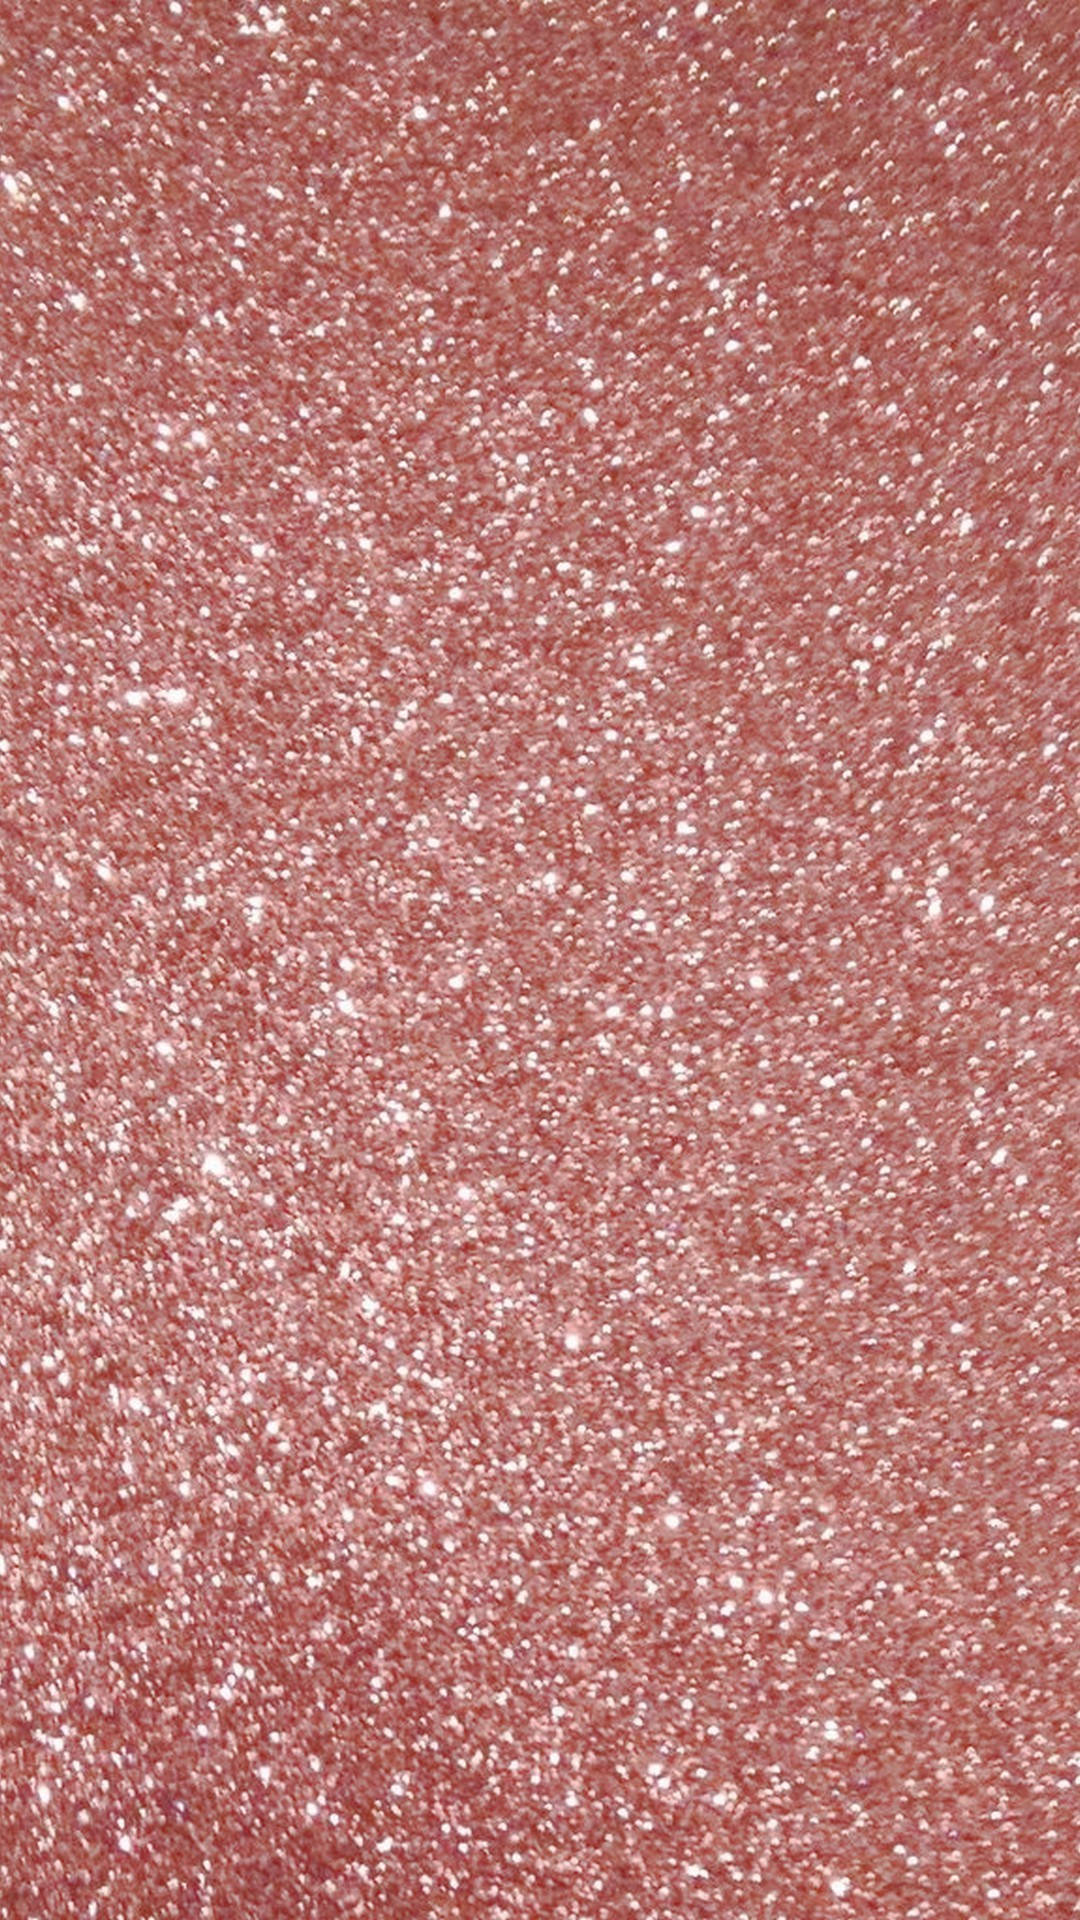 Et tæt skud af en lyserød glitrende overflade Wallpaper